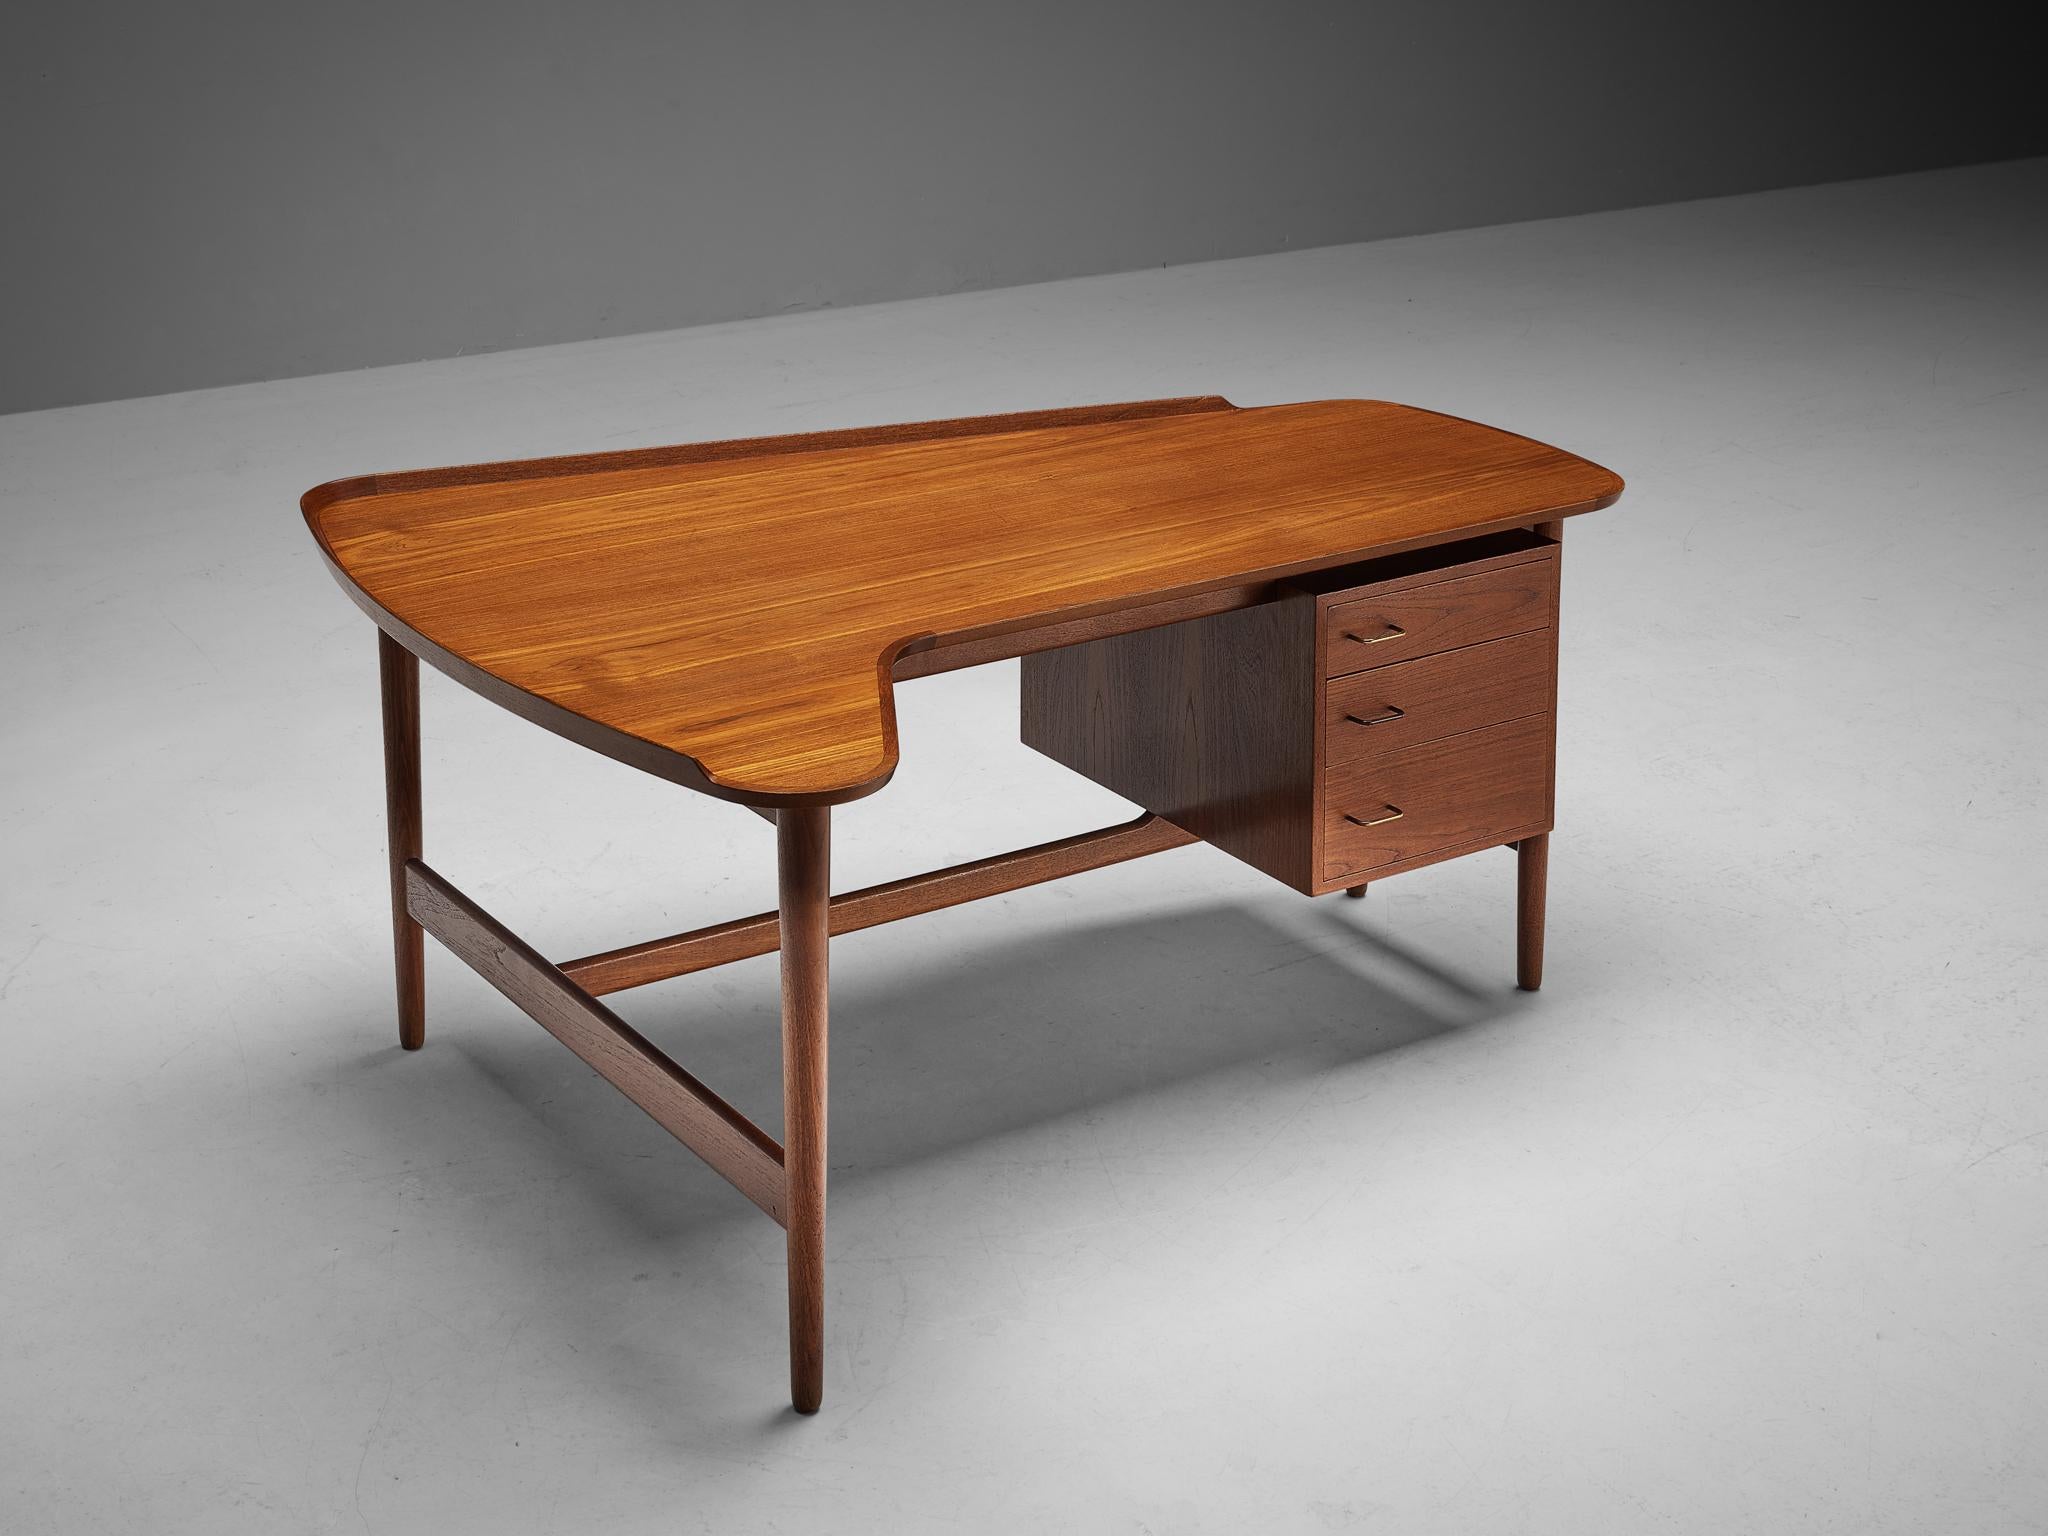 Arne Vodder für Bovirke, Schreibtisch 'Modell BO85', Teakholz, Messing, Dänemark, 1950er Jahre

Dieser Teakholz-Schreibtisch wurde von Arne Vodder für Bovirke entworfen. Der Tisch hat eine organisch geformte Tischplatte mit erhöhten Kanten. Ein